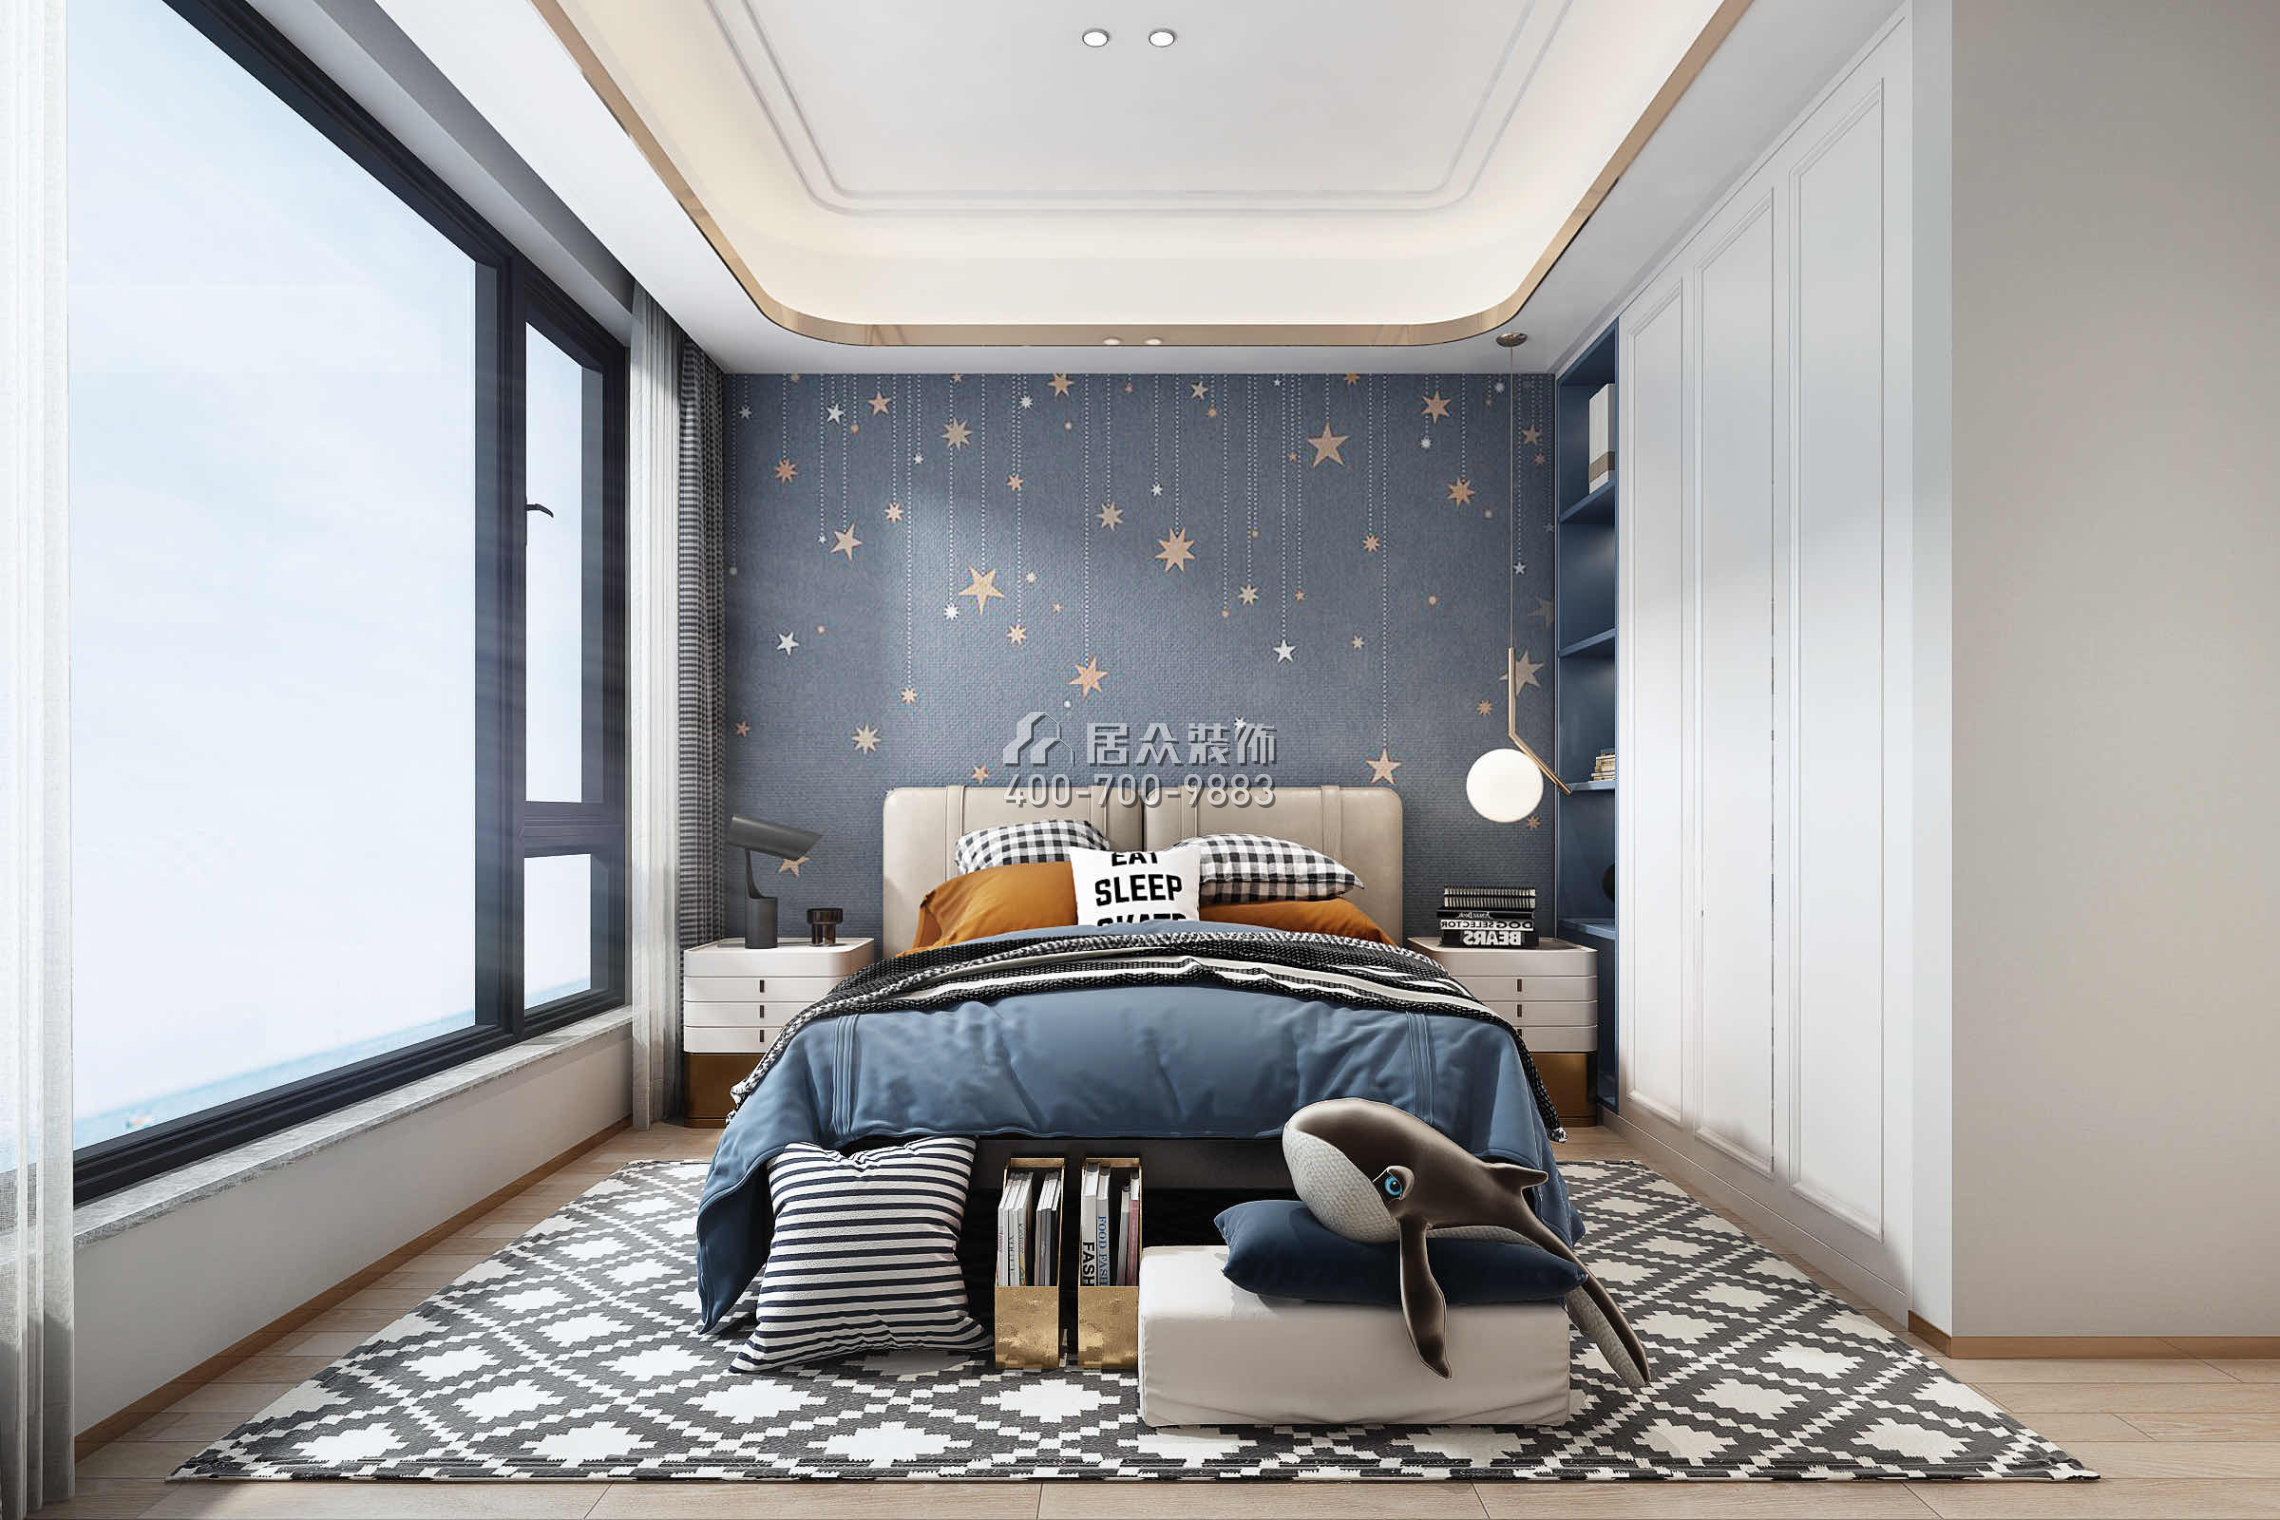 華爾頓1275158平方米中式風格平層戶型臥室裝修效果圖